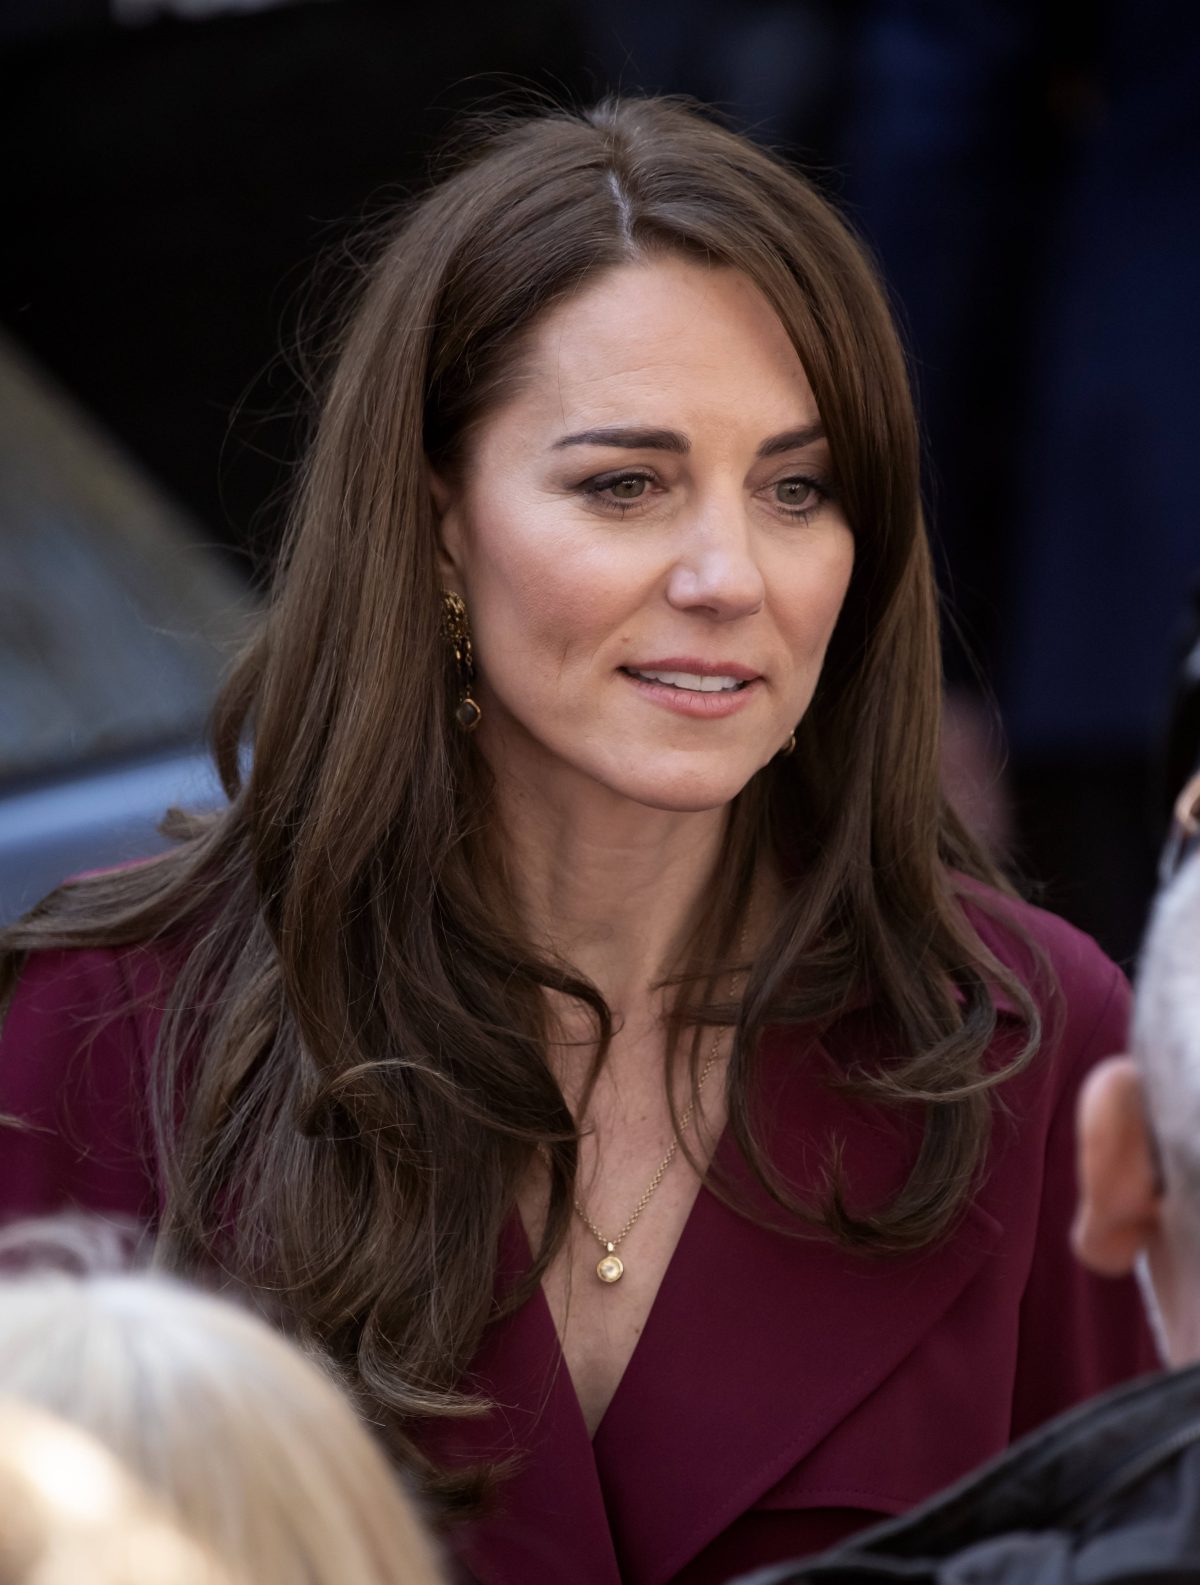 Kate Middleton ist beliebt und doch einsam - Das enthüllt nun eine Royals-Expertin und packt wichtige Details über die Prinzessin aus...